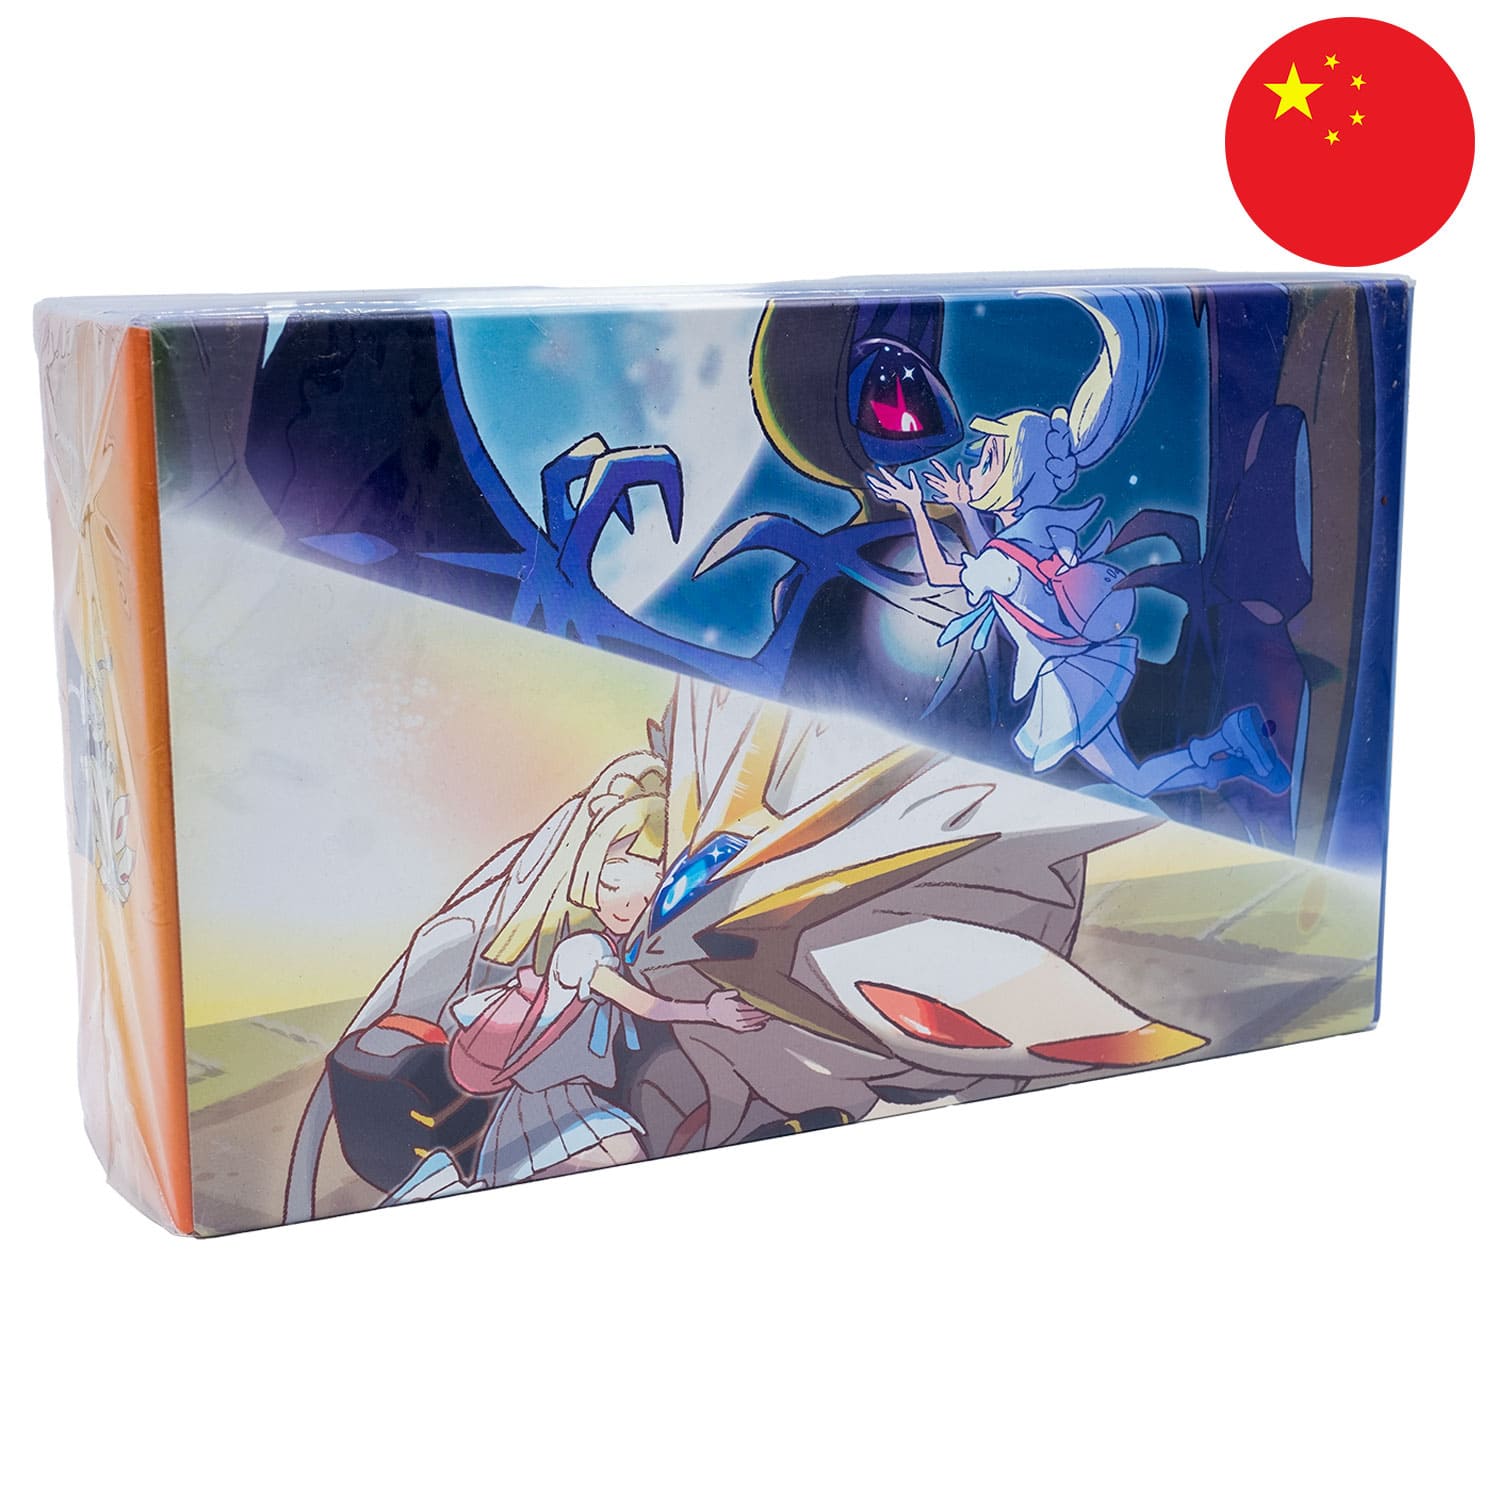 Die Sonne&Mond Box Lillies Support, sealed, frontal&schräg als Hauptbild, mit der Flagge Chinas in der Ecke.